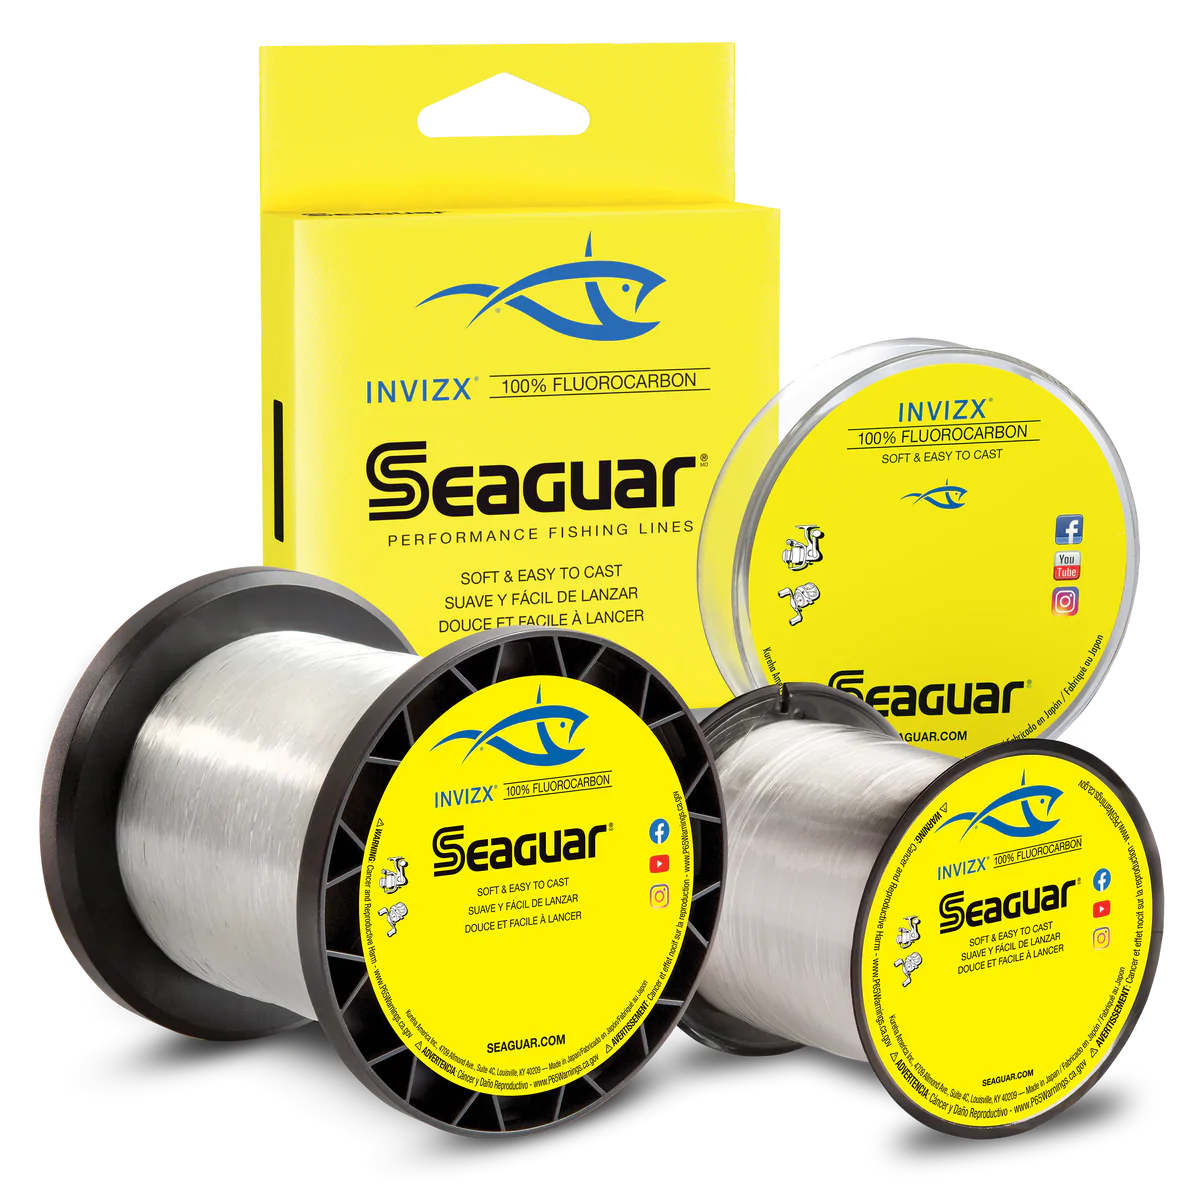 Seaguar INVIZX Fluorocarbon